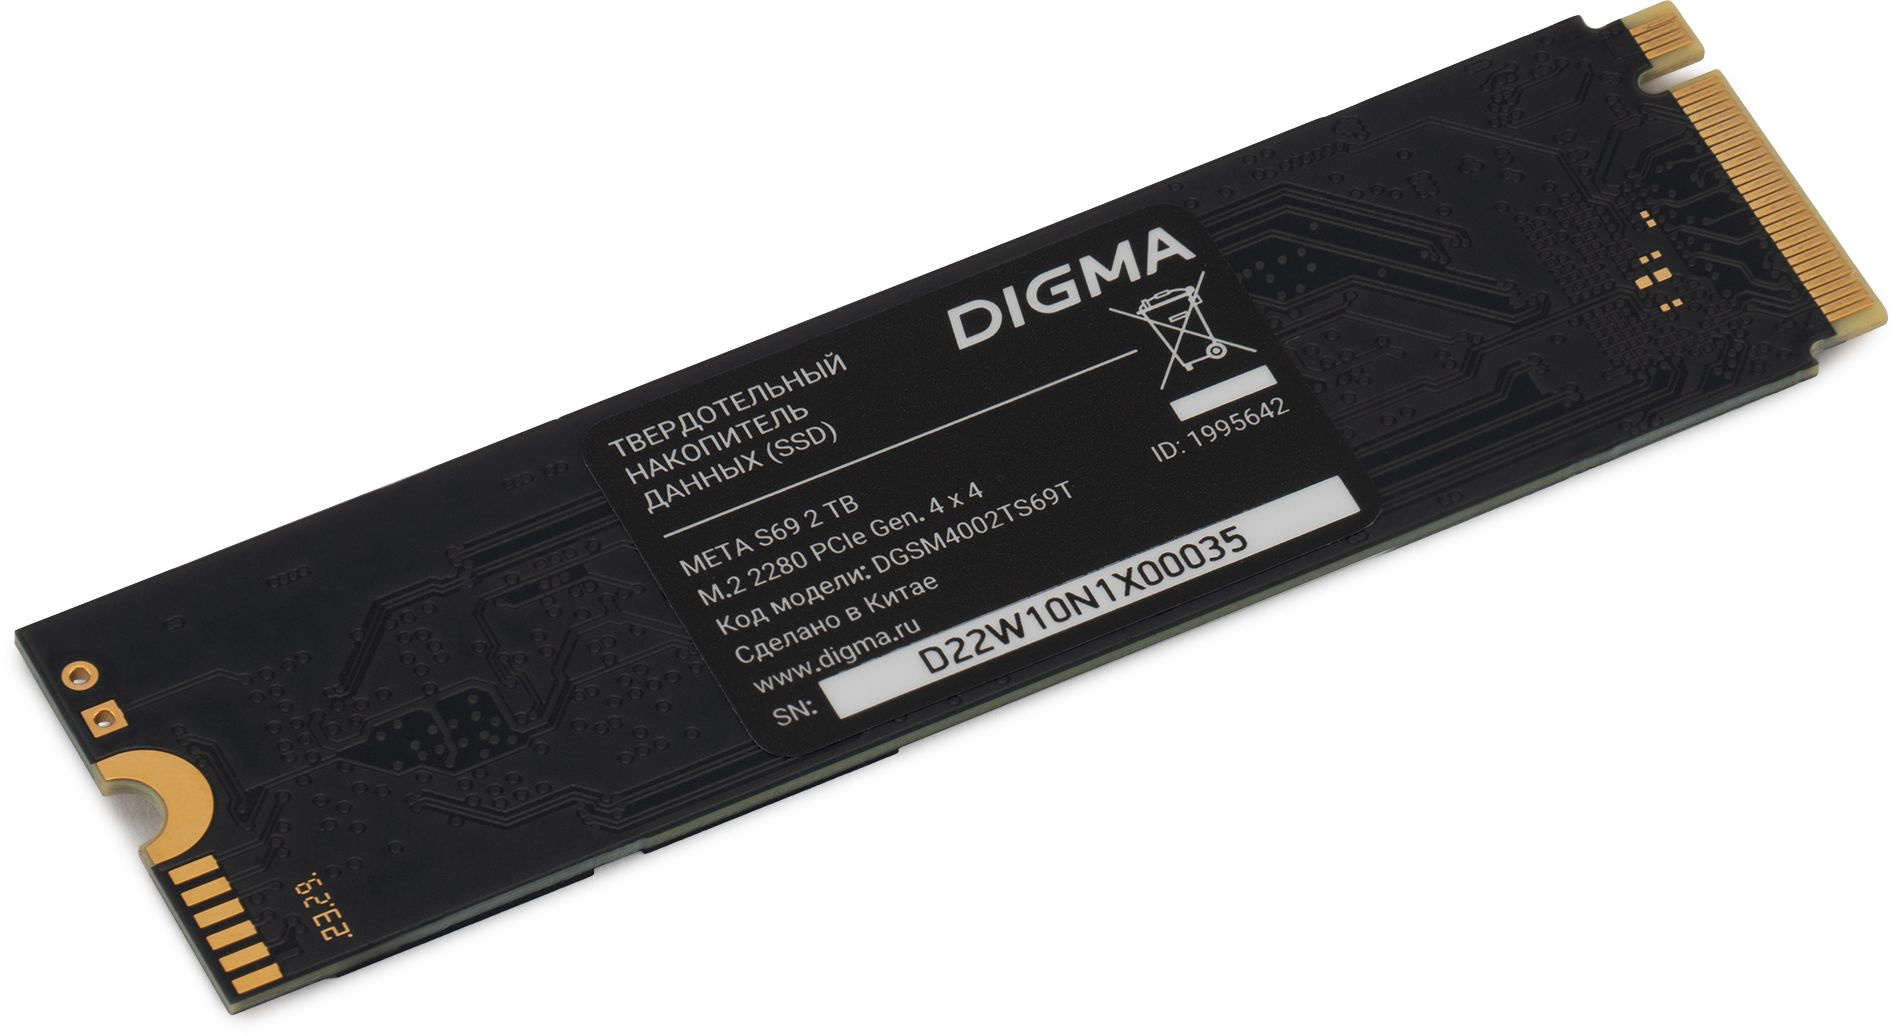 SSD  Digma Meta S69 DGSM4002TS69T 2, M.2 2280, PCIe 4.0 x4,  NVMe,  M.2,  rtl